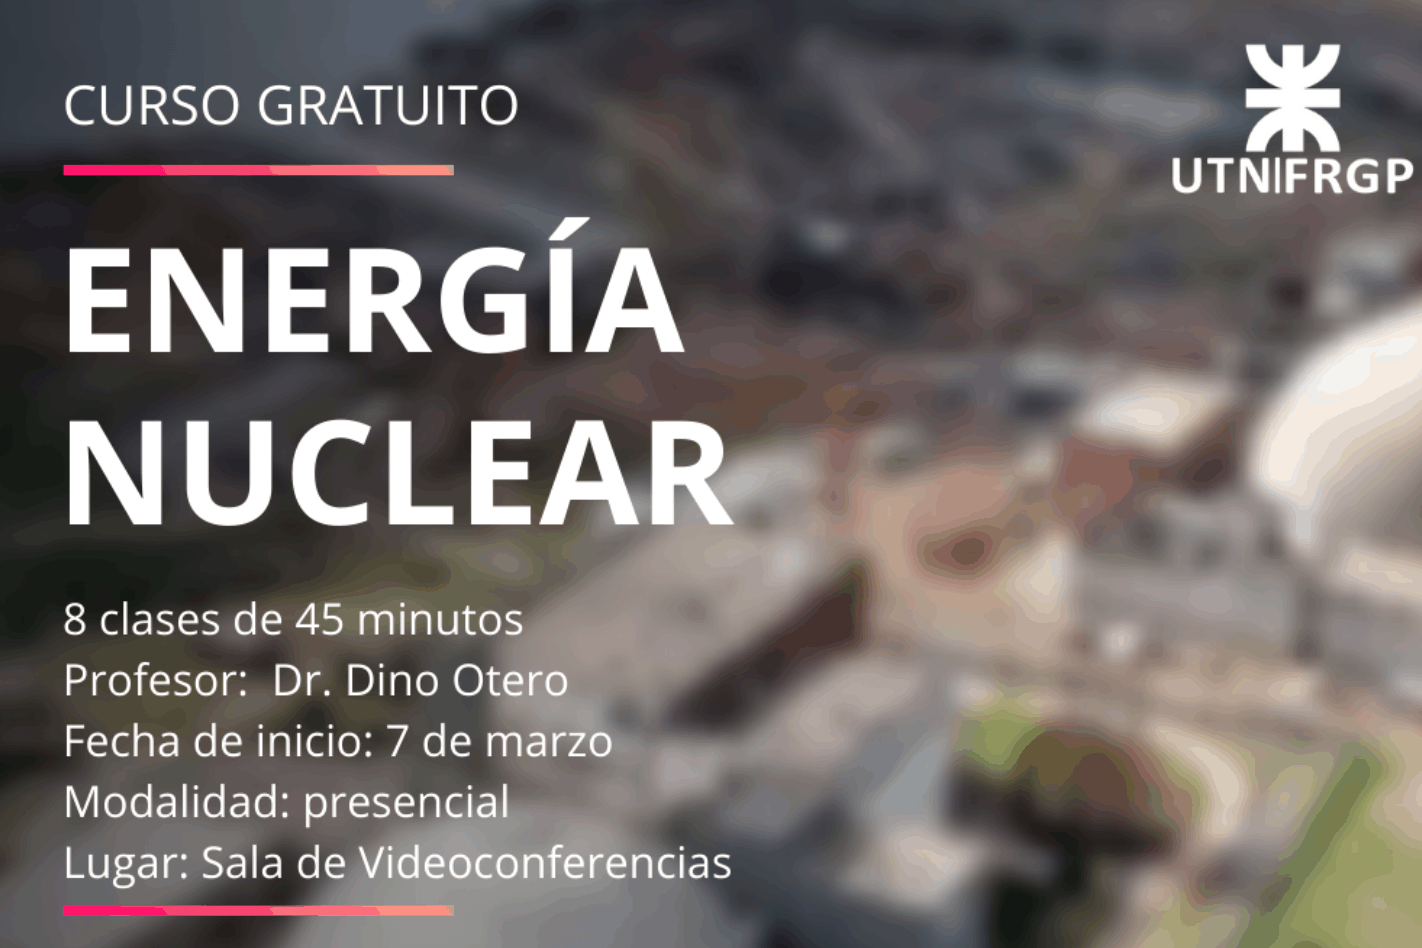 Curso gratuito "Energía nuclear"